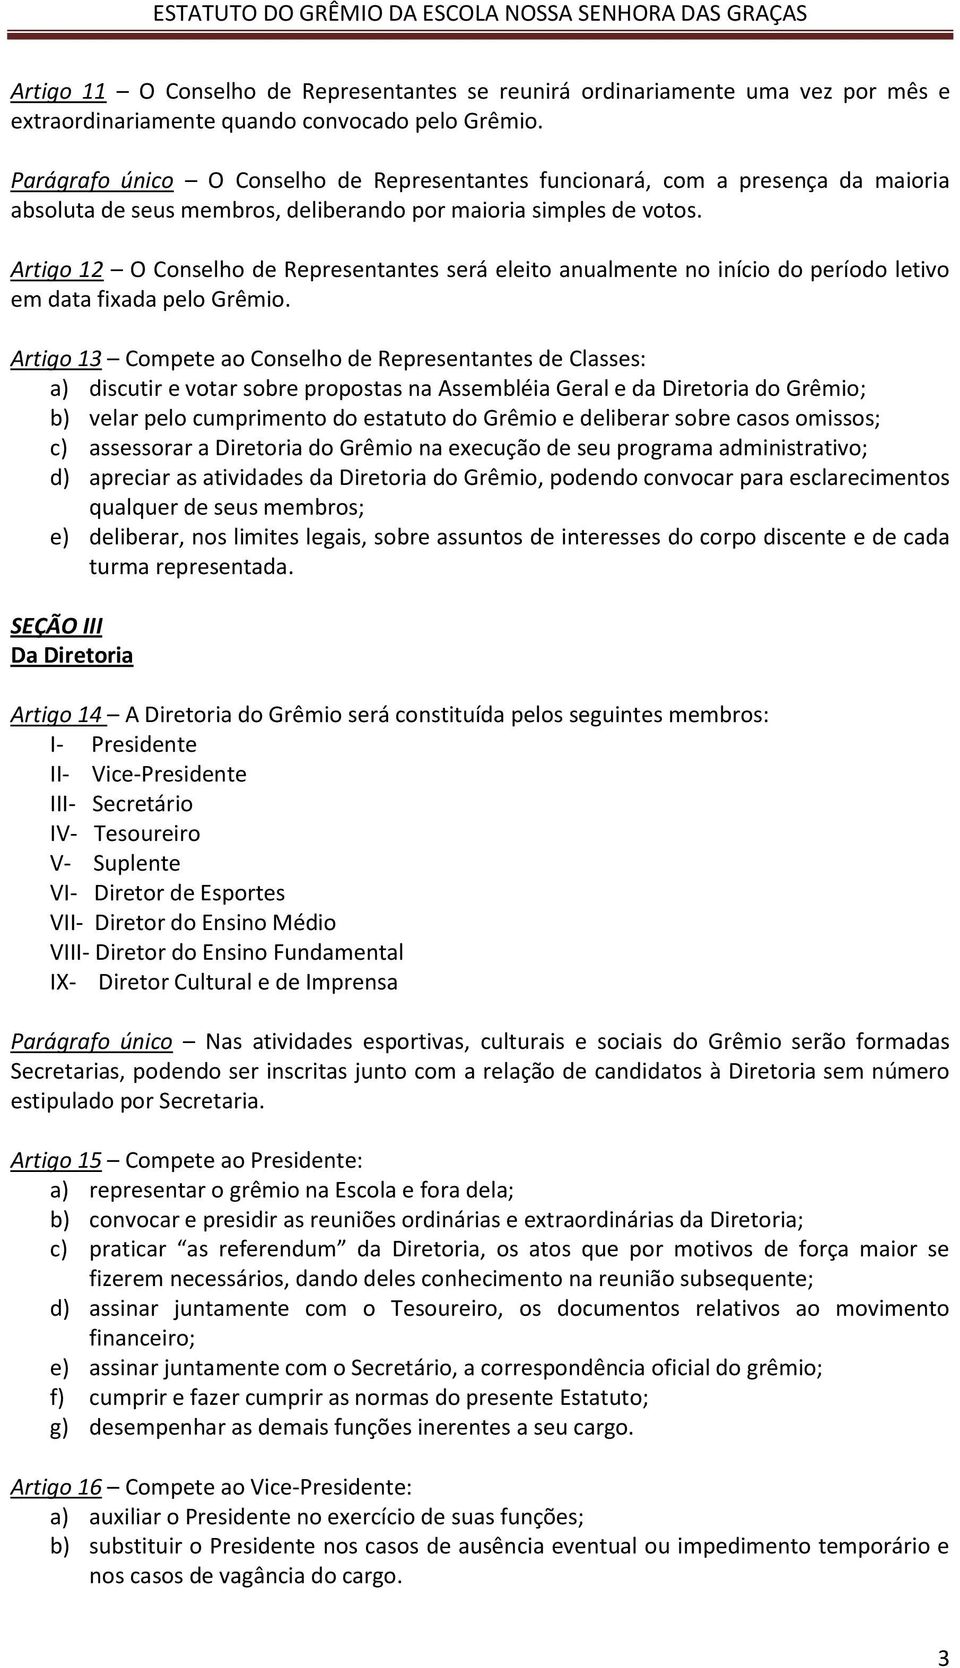 Artigo 12 O Conselho de Representantes será eleito anualmente no início do período letivo em data fixada pelo Grêmio.